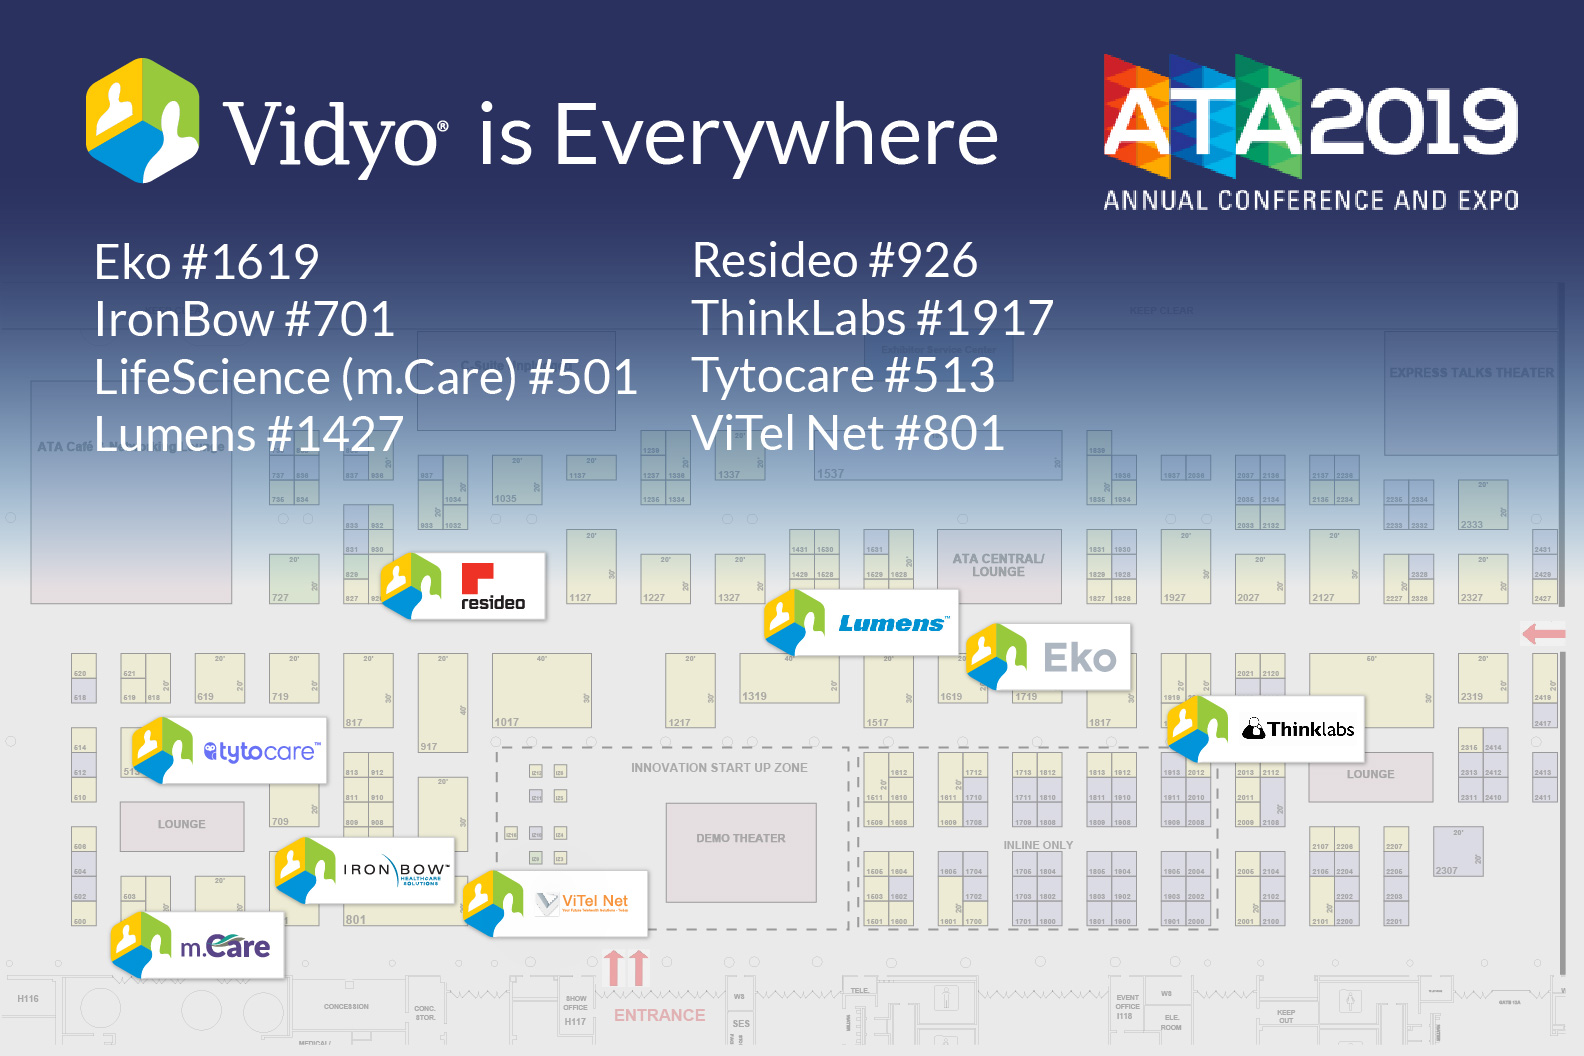 Vidyo is Everywhere at ATA2019